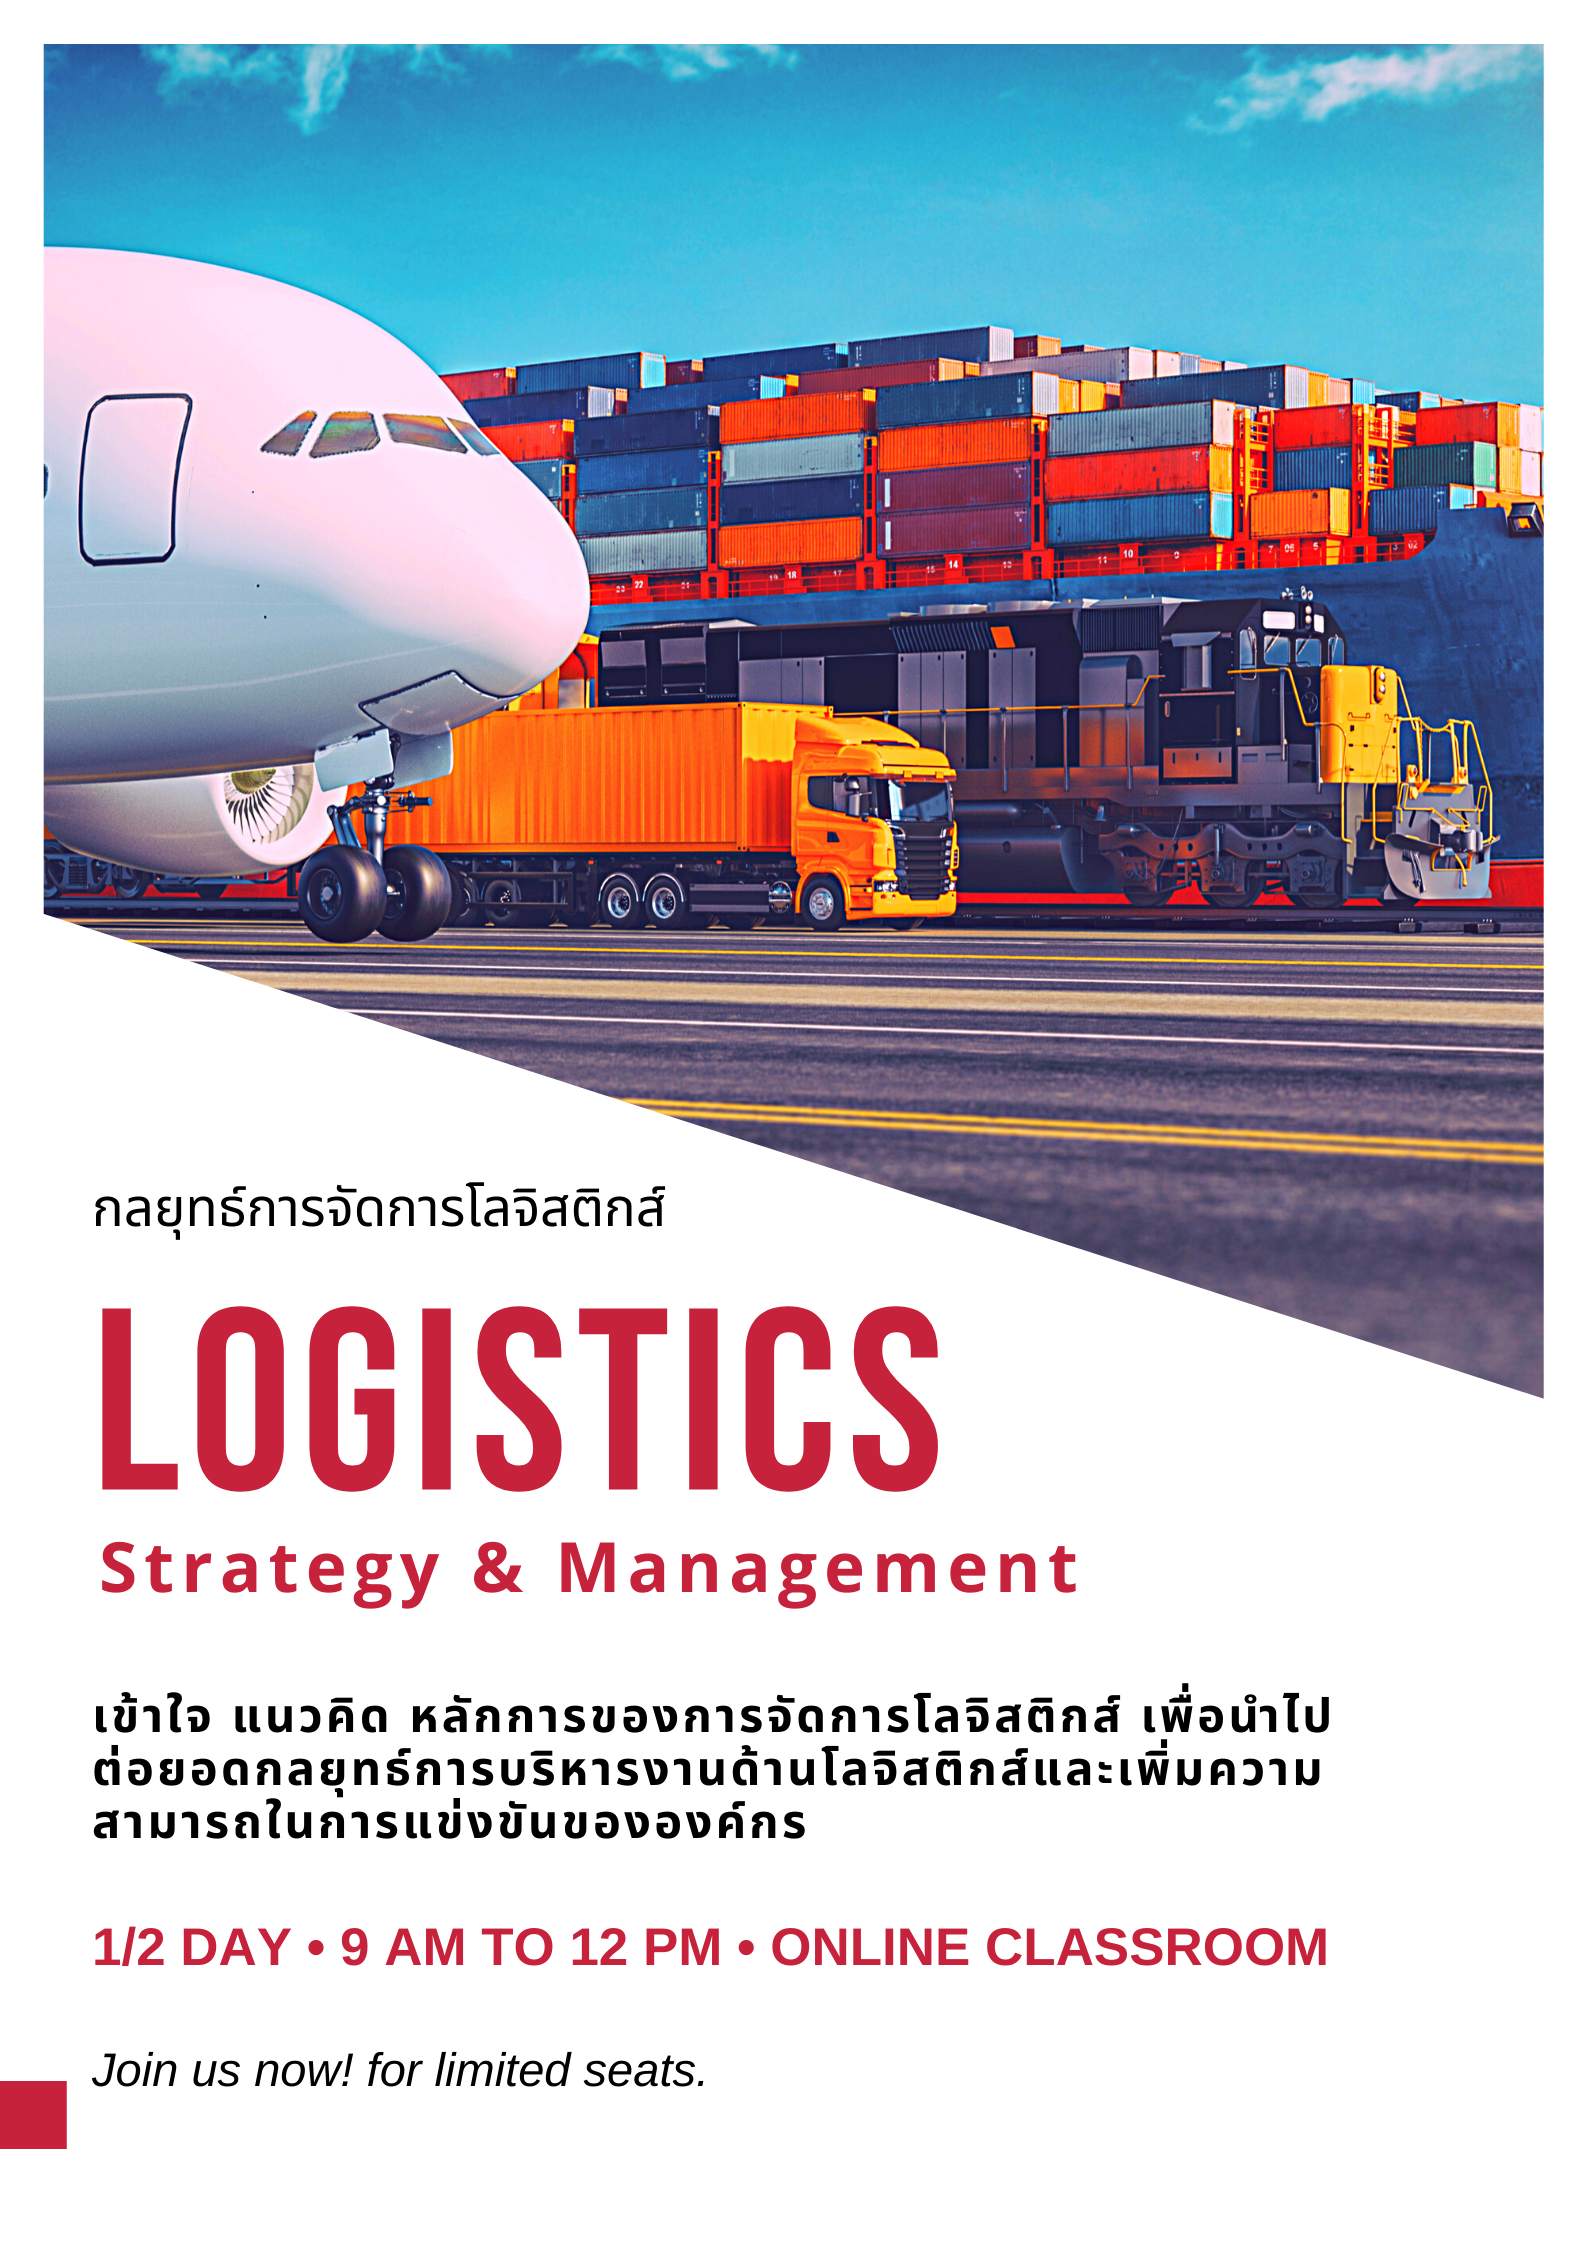 หลักสูตร กลยุทธ์การจัดการโลจิสติกส์ (Logistics: Strategy & Management) - หลักสูตร 3 ชั่วโมง